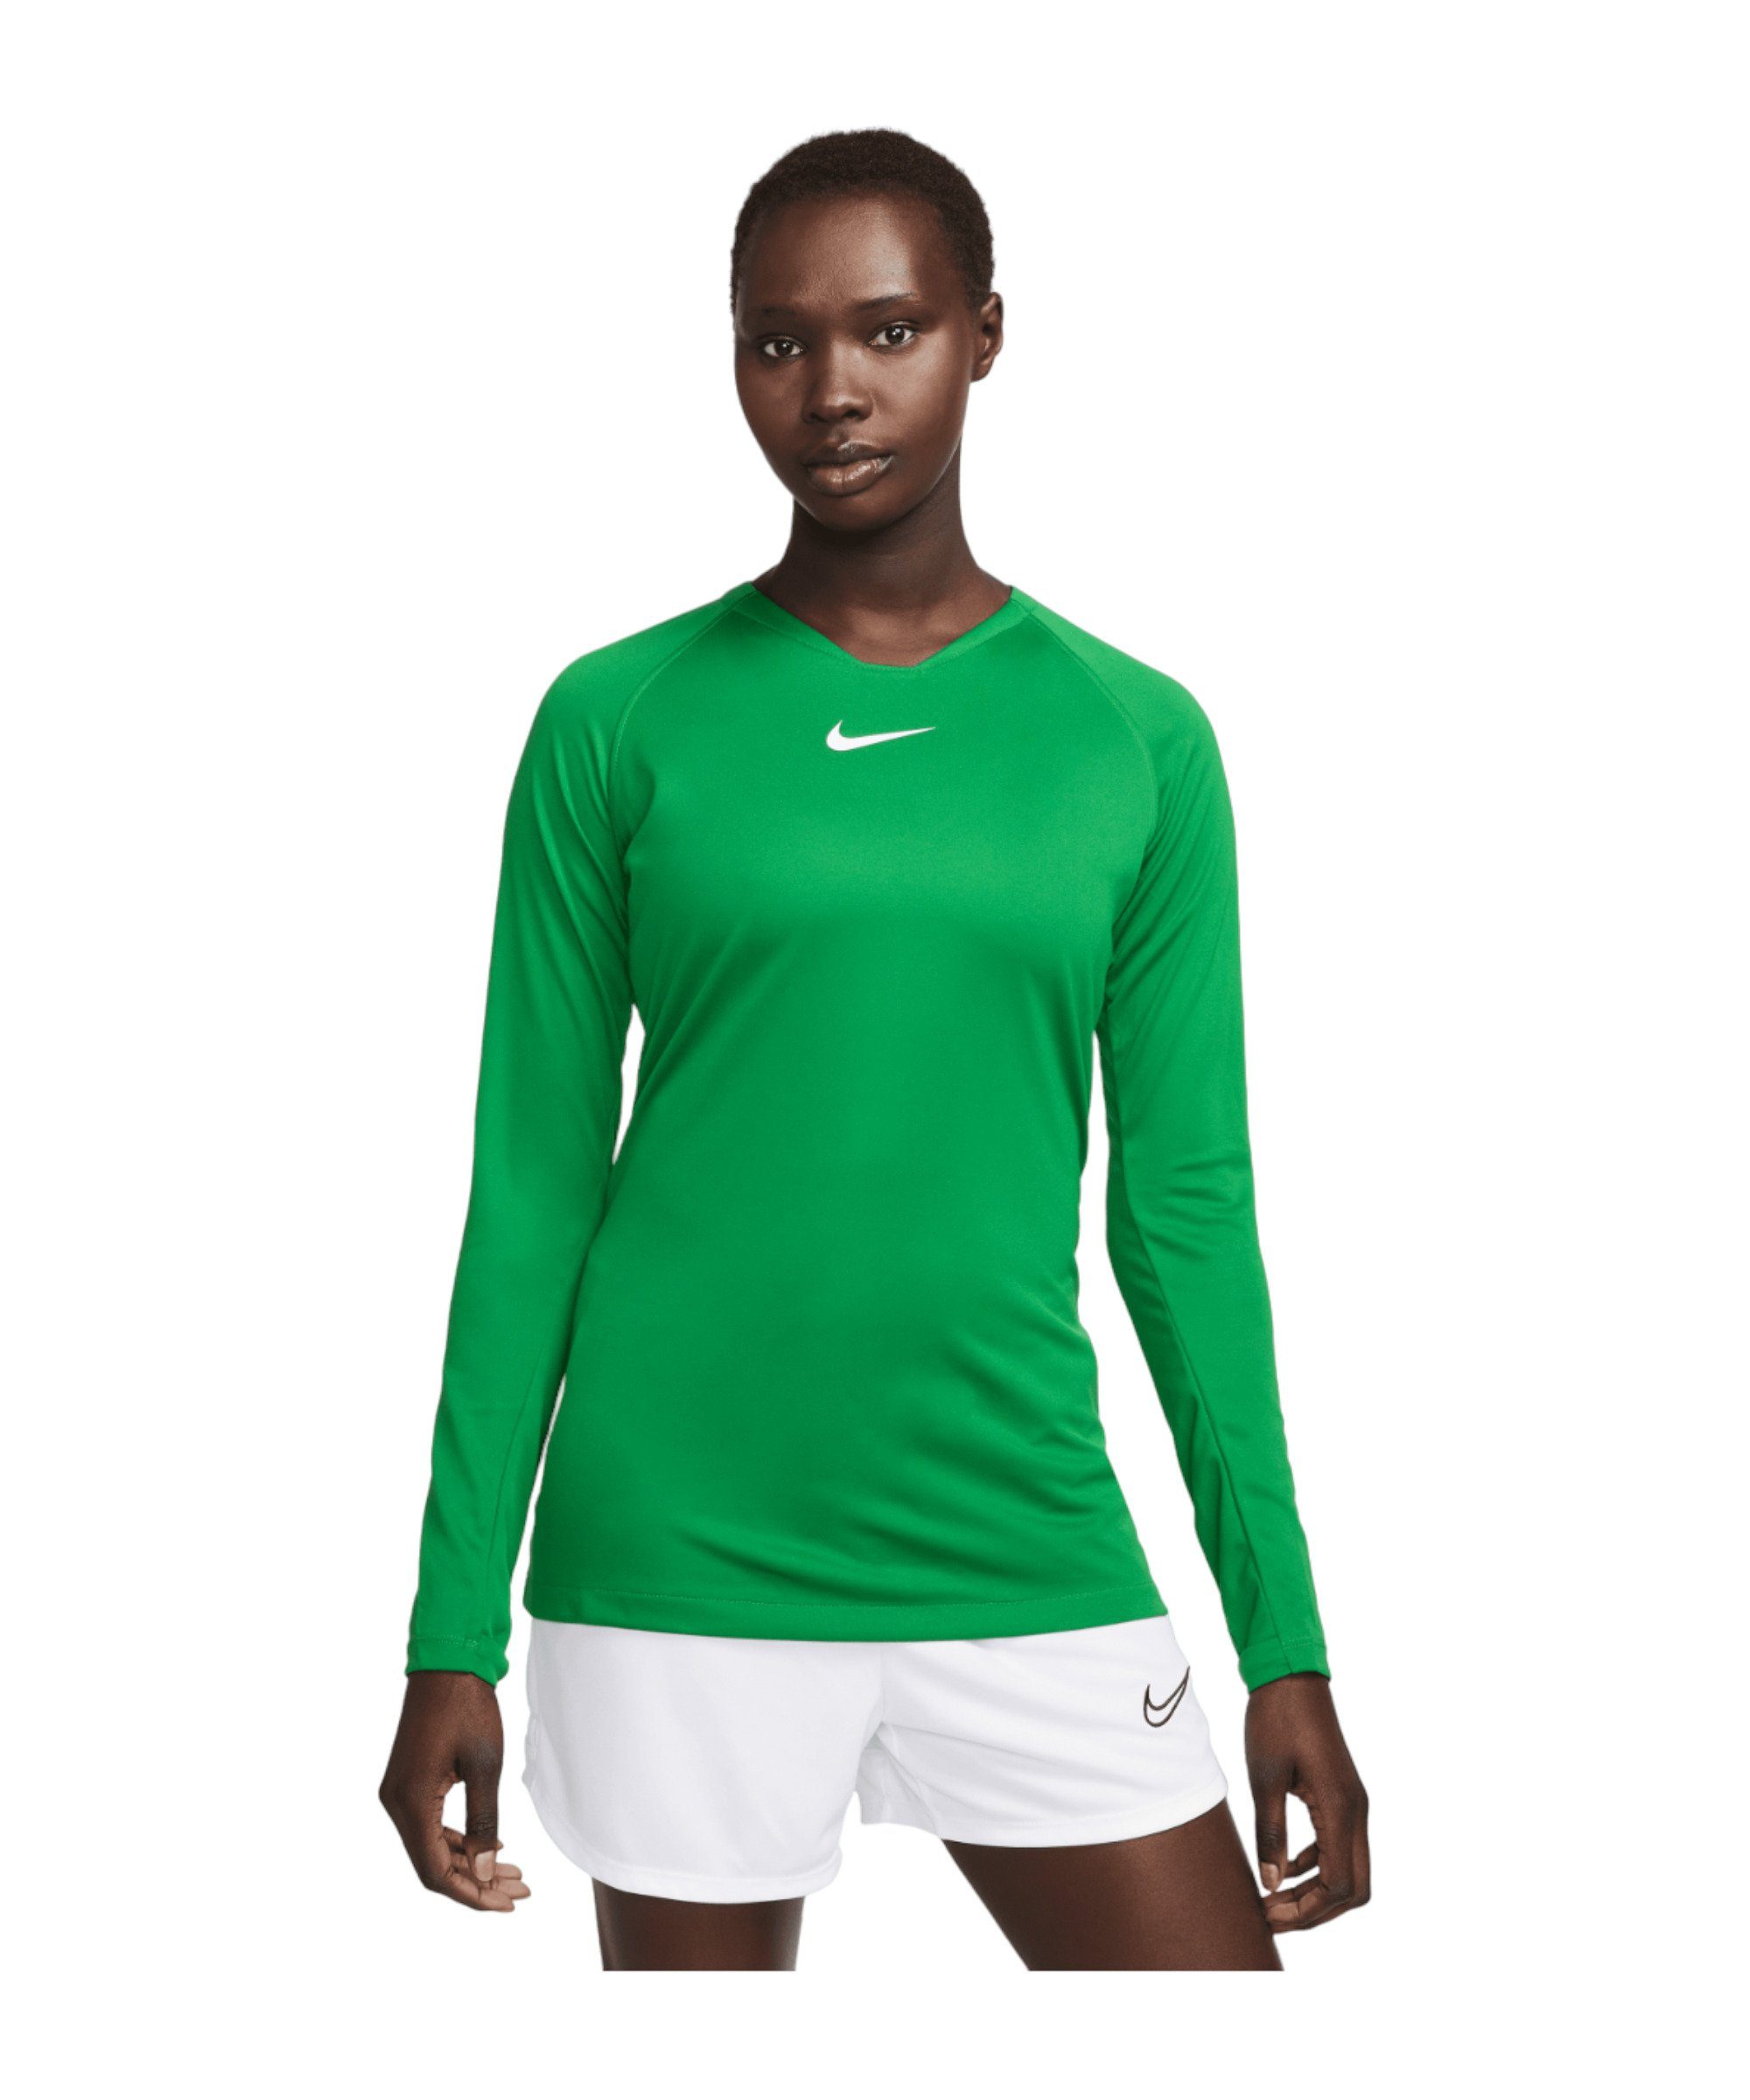 Damen Layer Nike default First Funktionsshirt gruenweiss Park